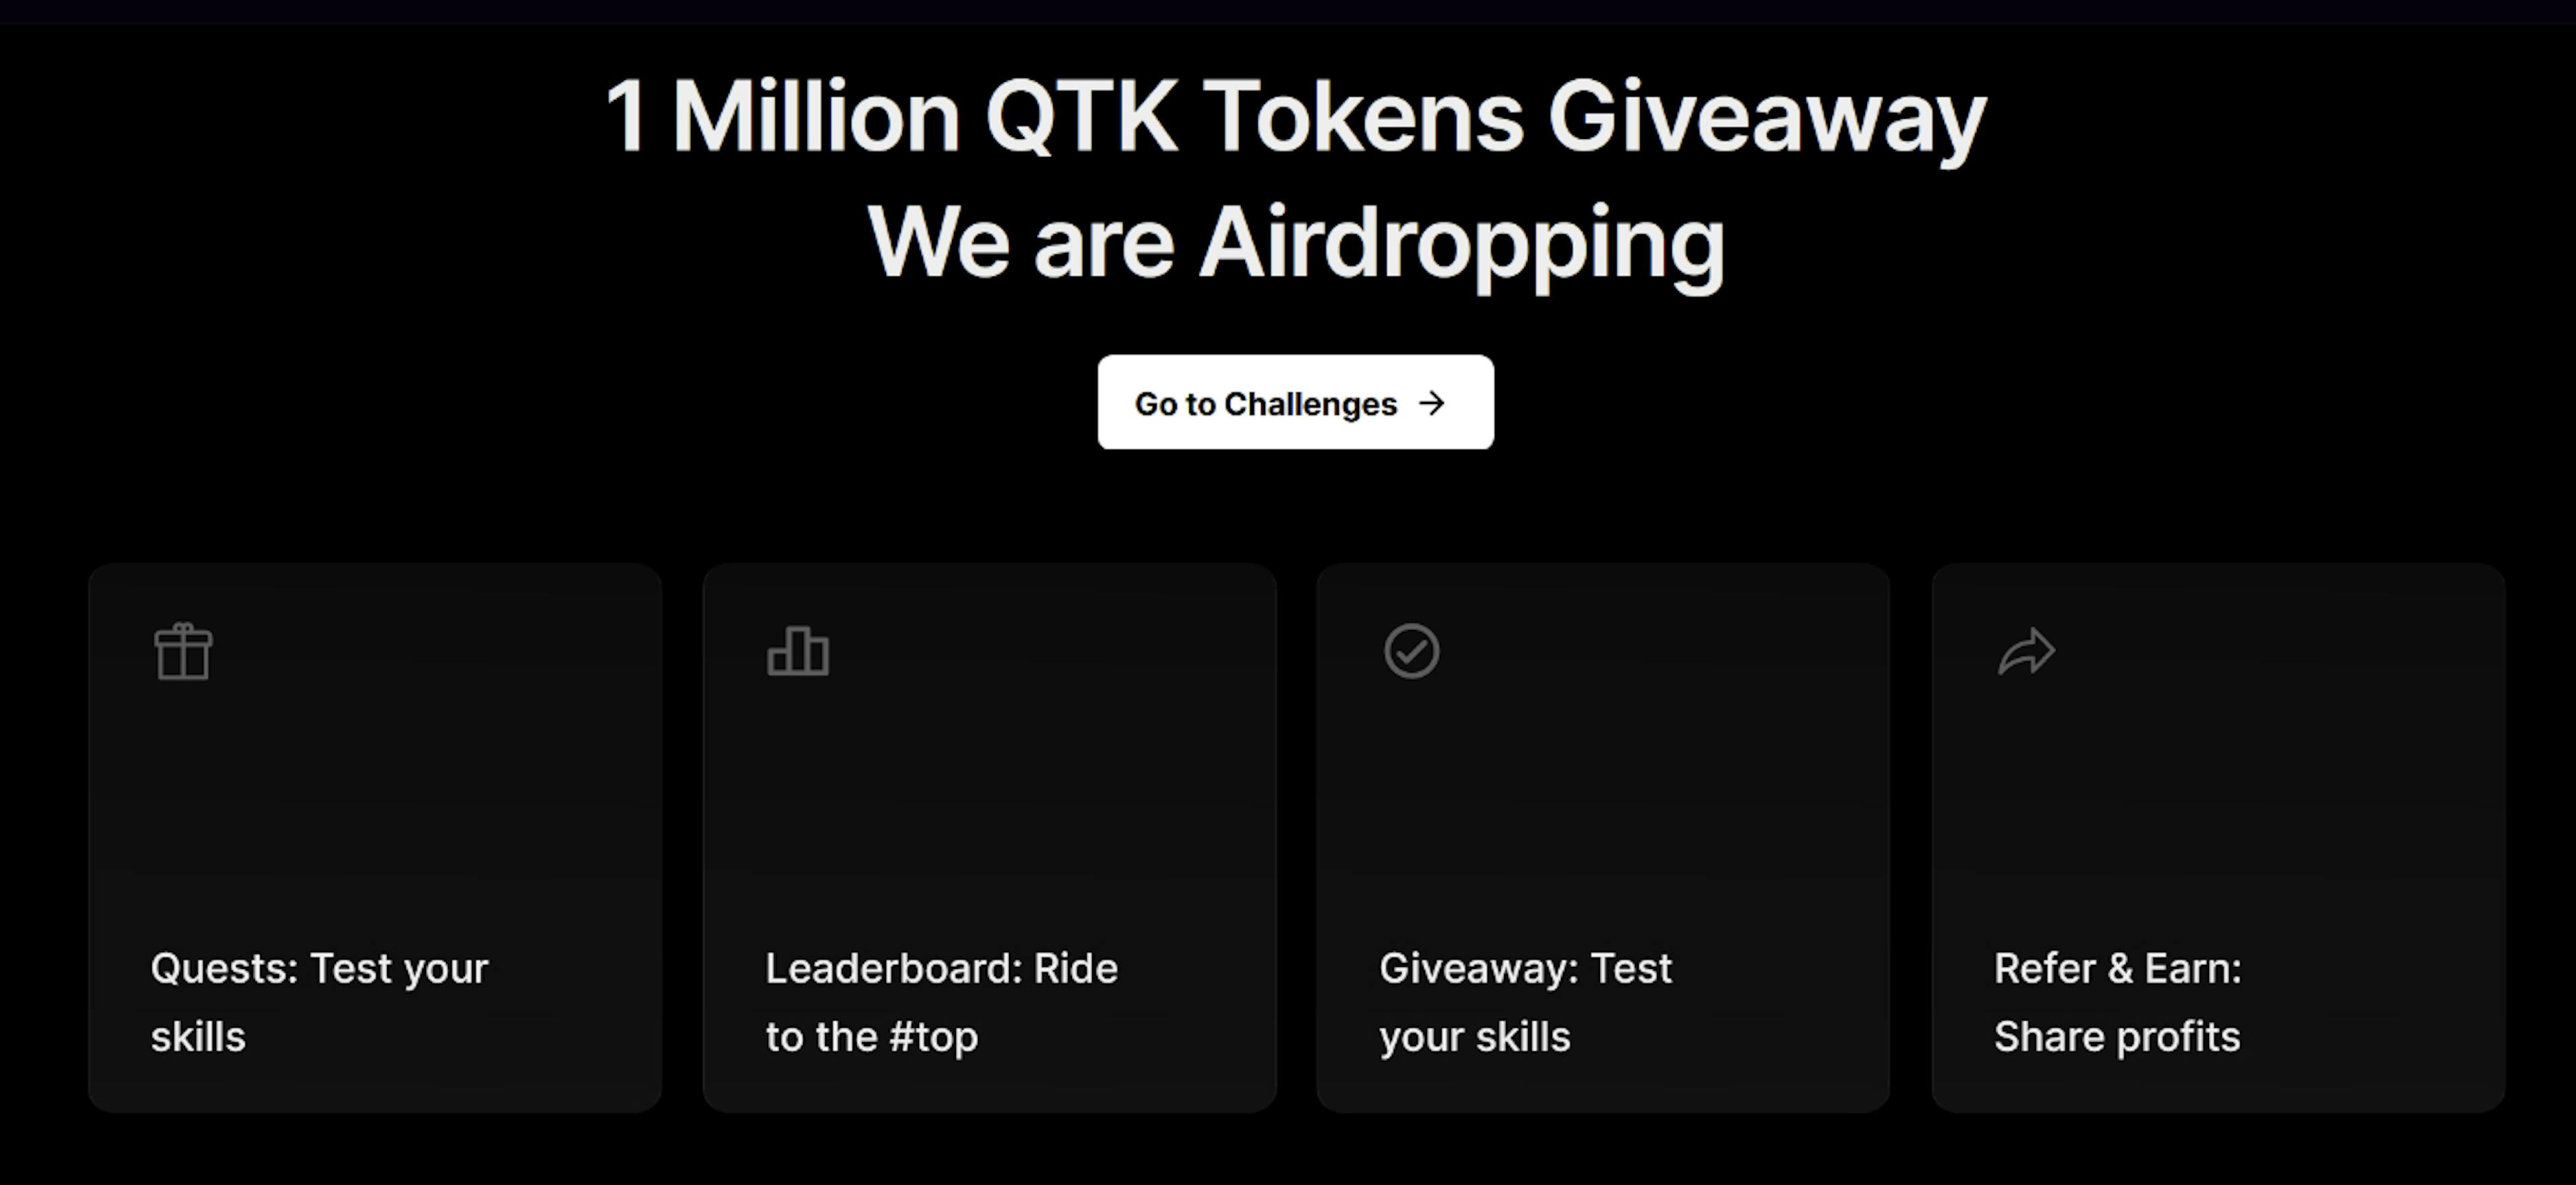 featured image - QTK が 100 万ドルのエアドロップを開始: 今すぐシェアを獲得しましょう